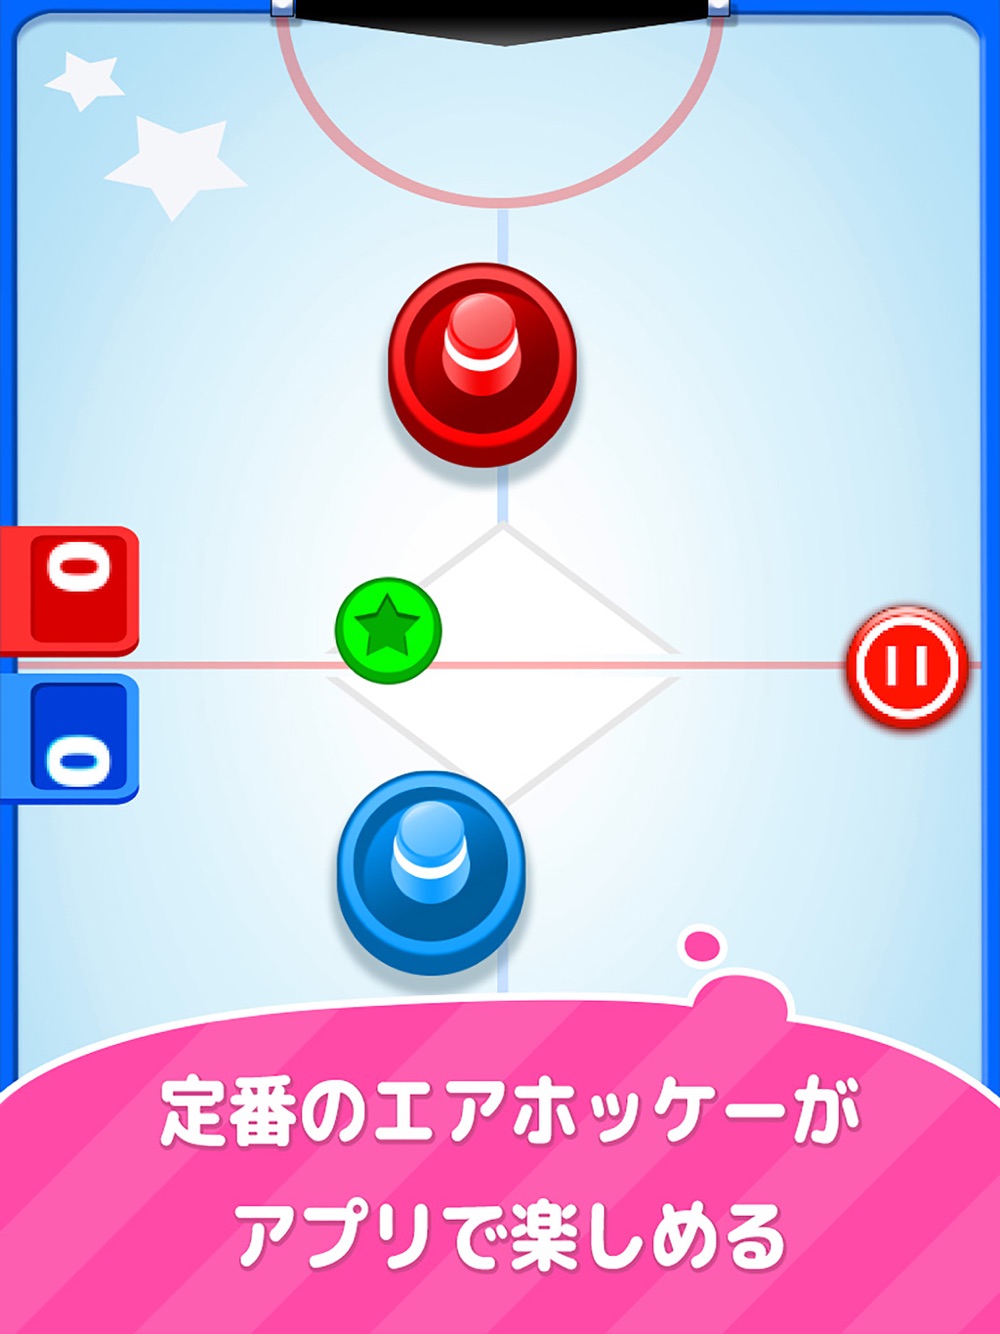 スーパー エアホッケー 2人で遊べる無料の アクション ゲーム Free Download App For Iphone Steprimo Com